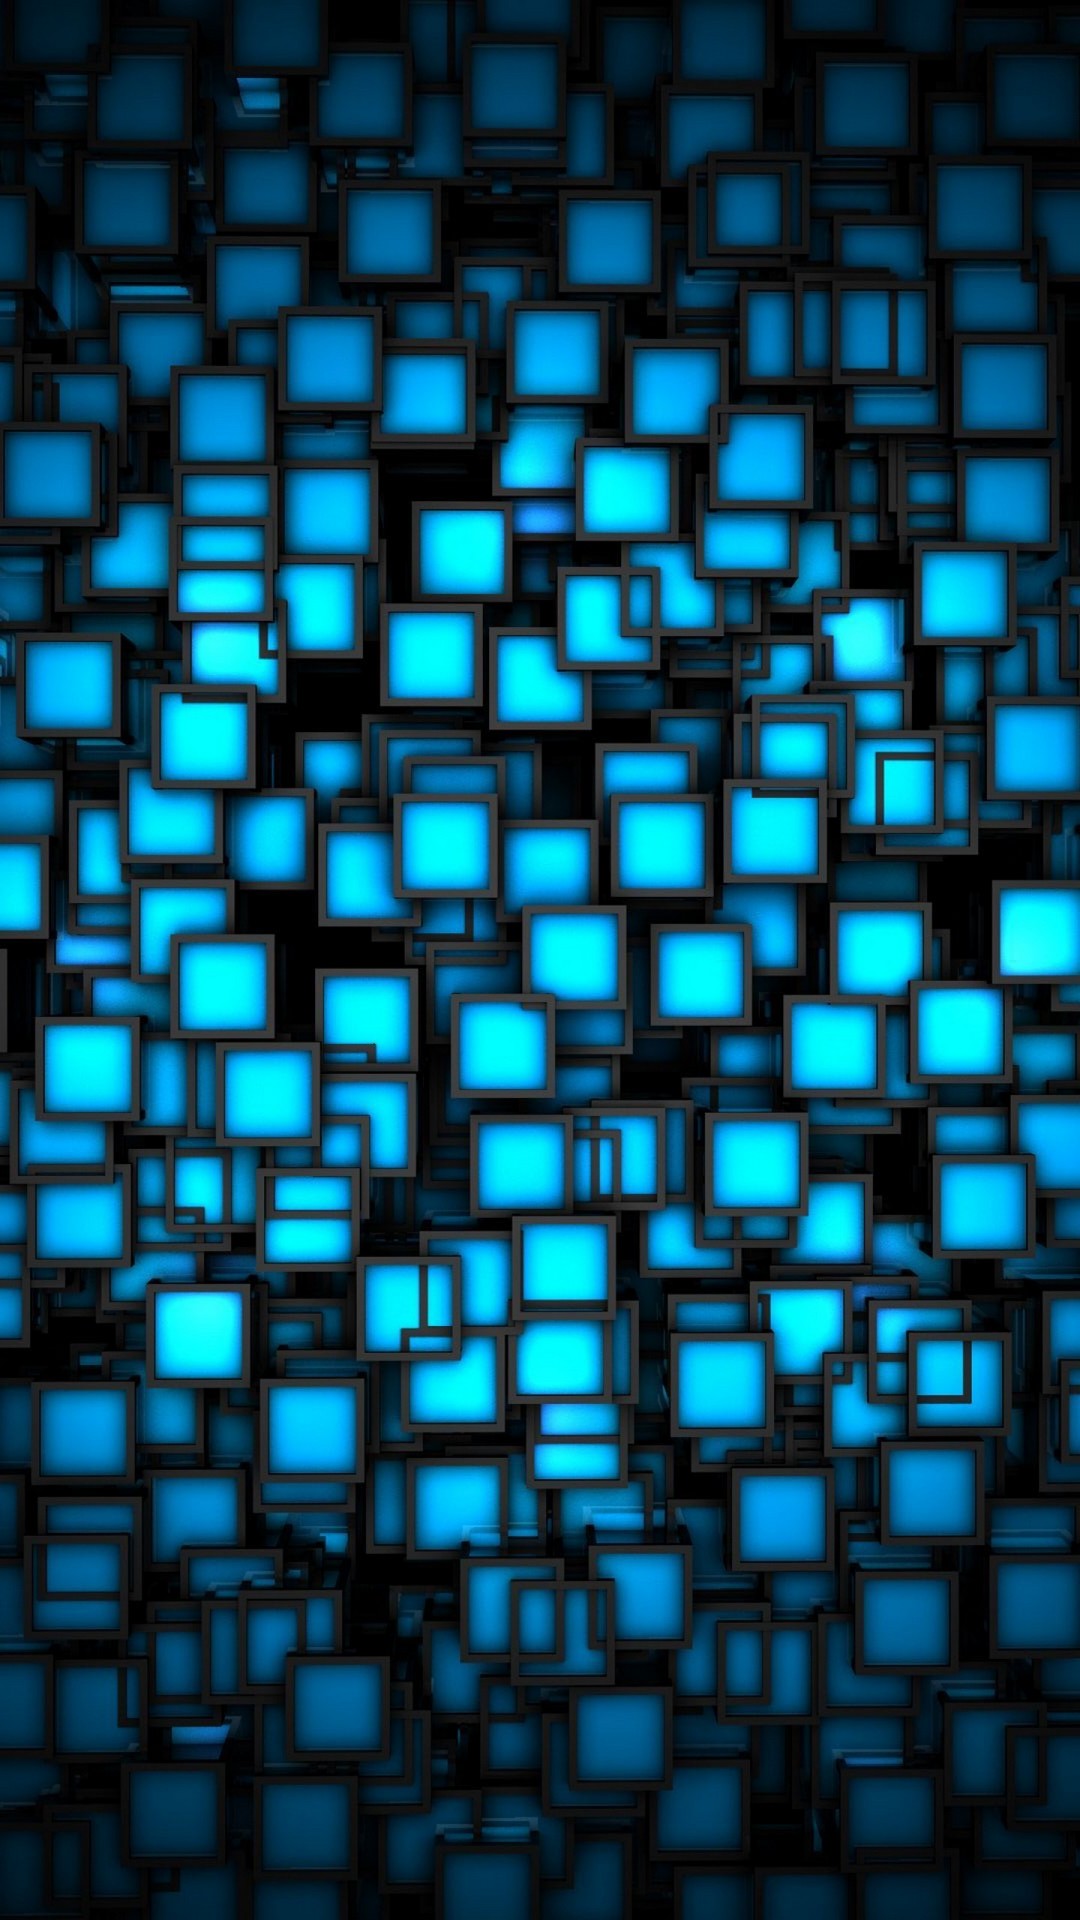 3D Blue iPhone Wallpaper resolution 1080x1920